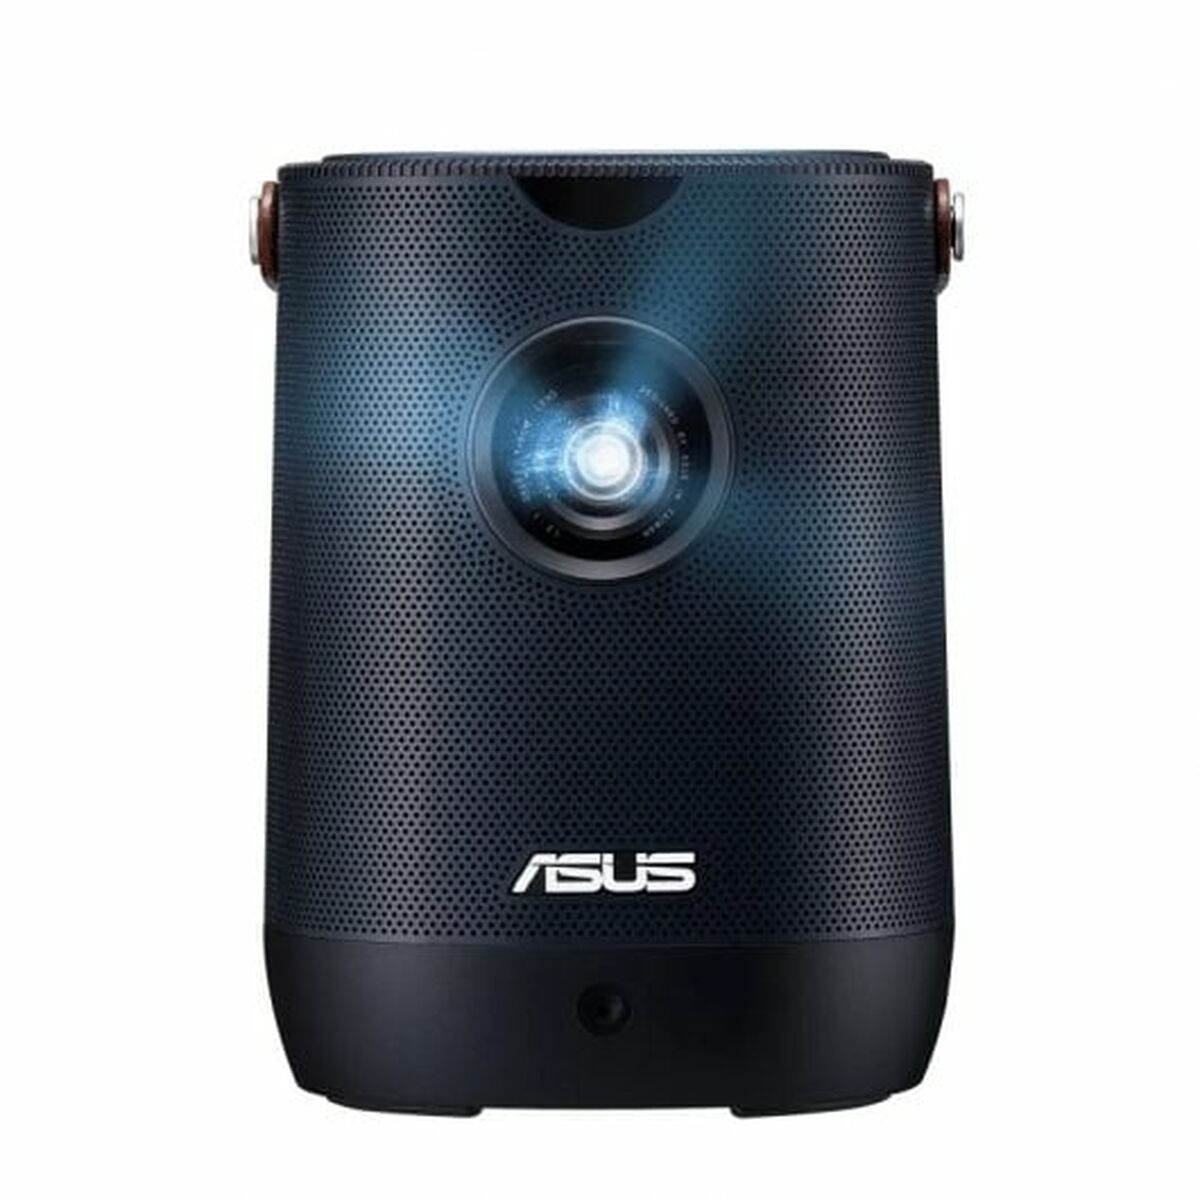 Projector Asus 90LJ00I5-B01070 Full HD 400 lm 1920 x 1080 px